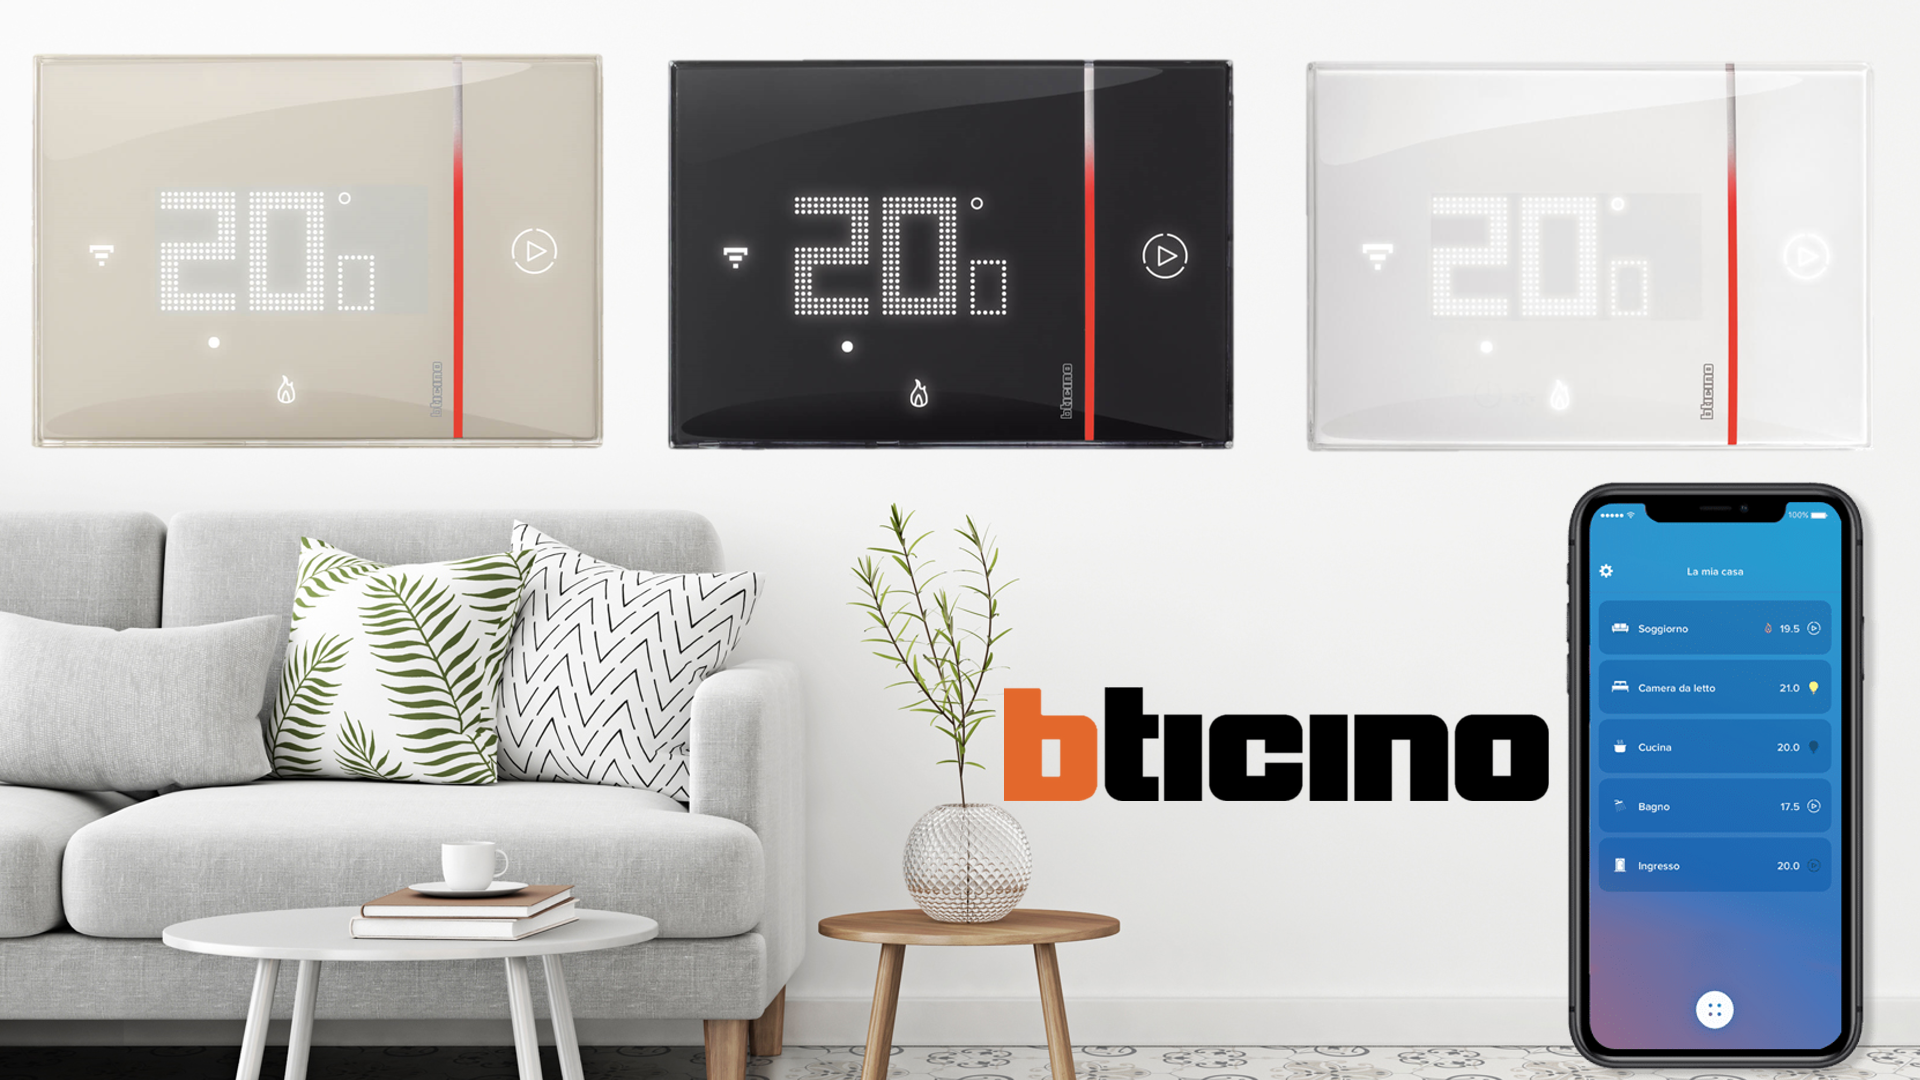 BTicino Smarther 2 with Netatmo termostato connesso con wifi integrato: istruzioni, installazione, Alexa e Google Home